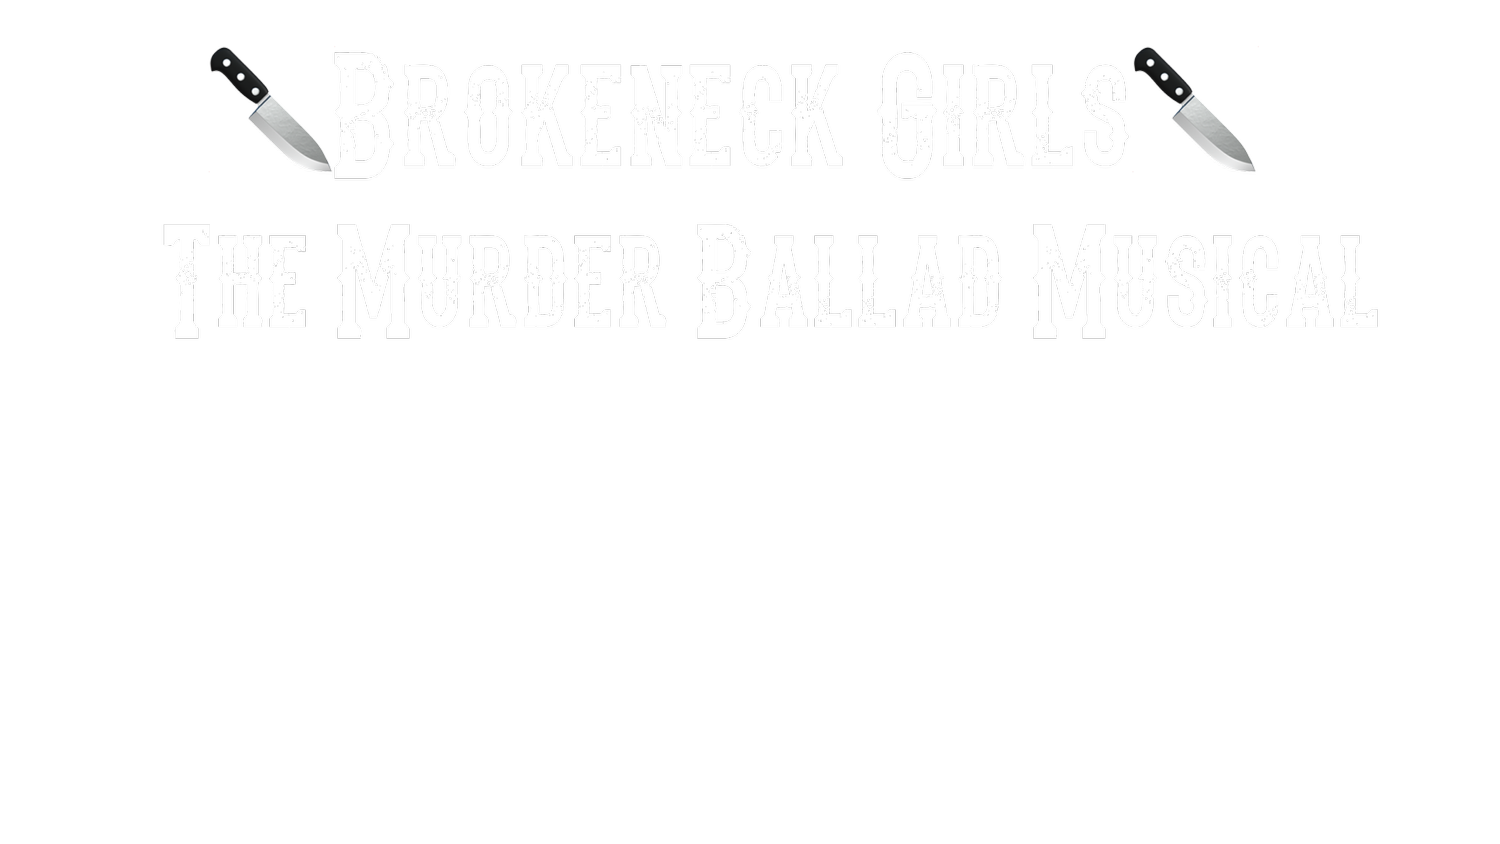 Brokeneck Girls:  The Murder Ballad Musical